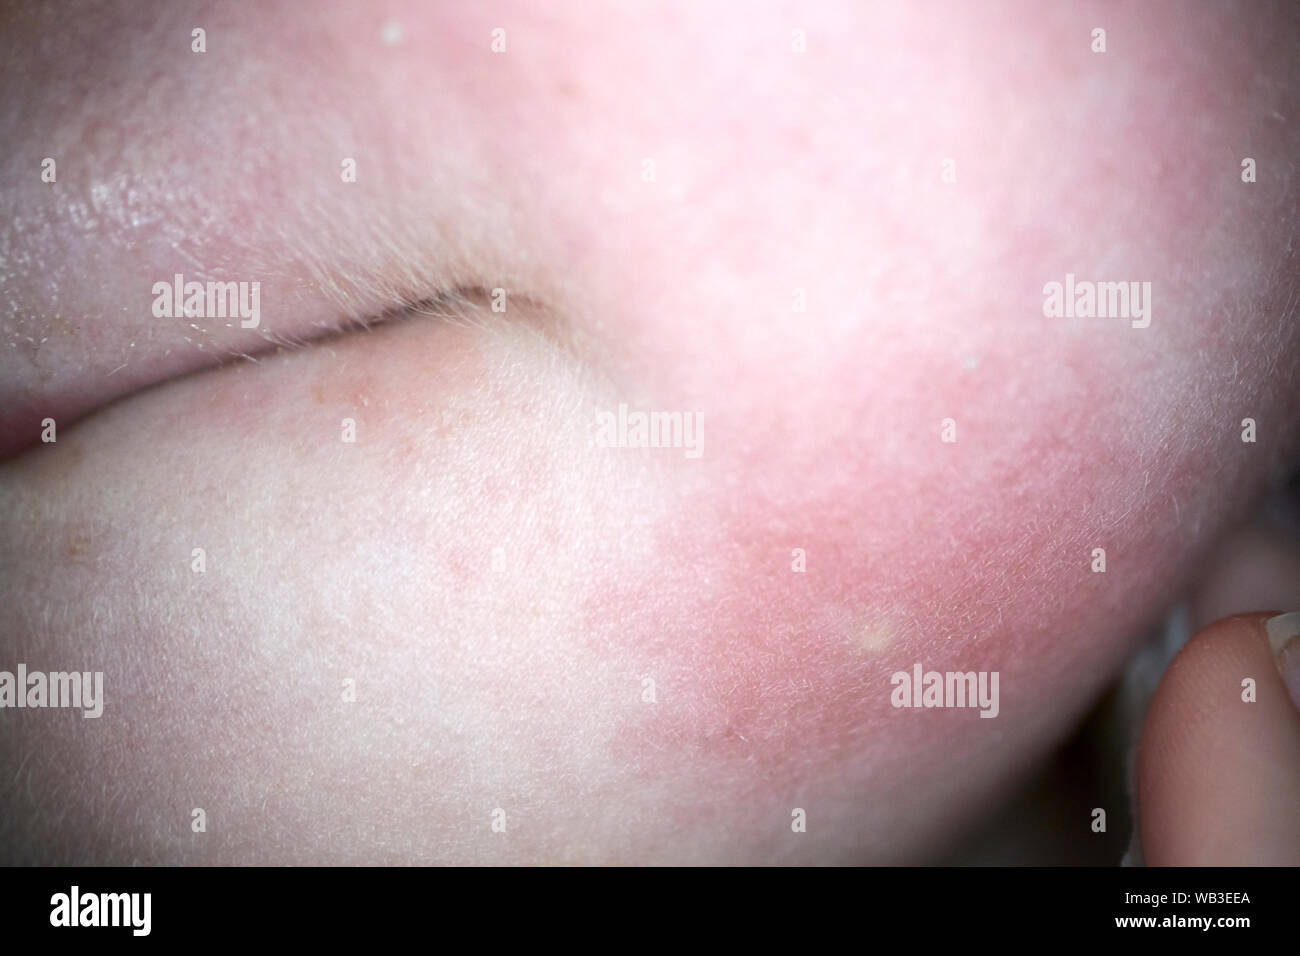 Wespenstich Mark und Entzündung auf dem Gesicht eines fünf Jahre alten Mädchen, England, Großbritannien Stockfoto